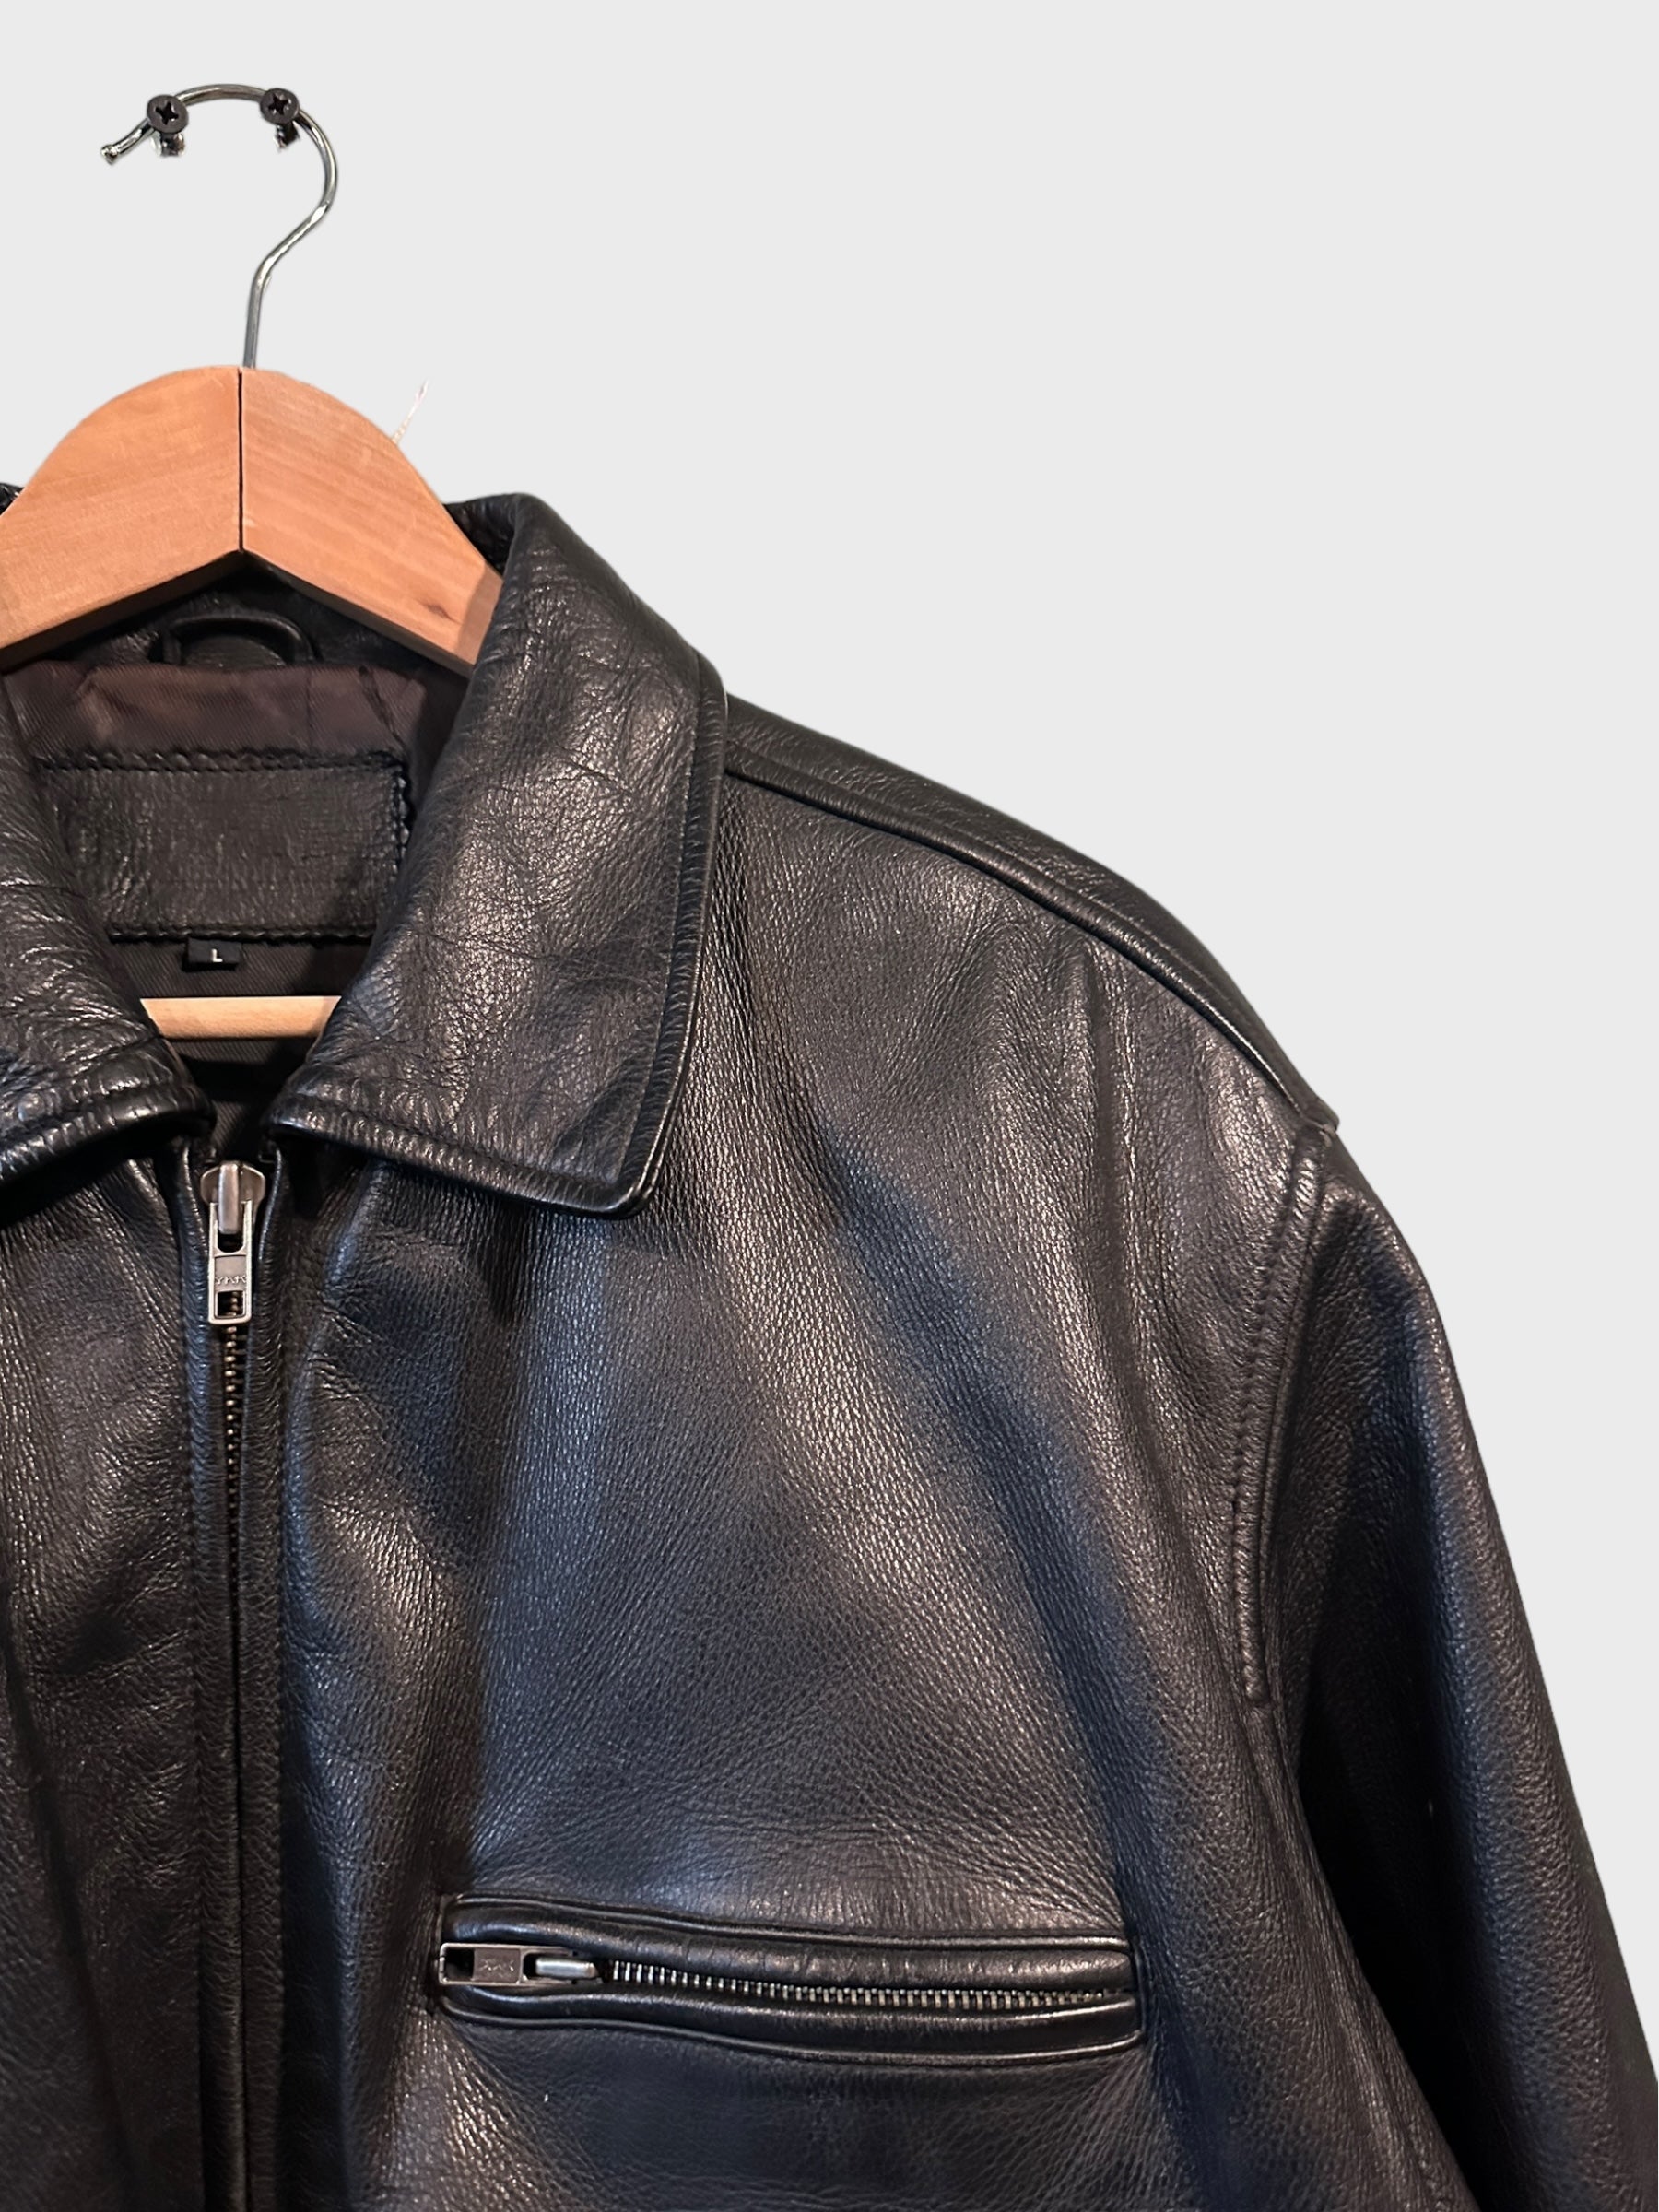 Leather Jacket Chunky